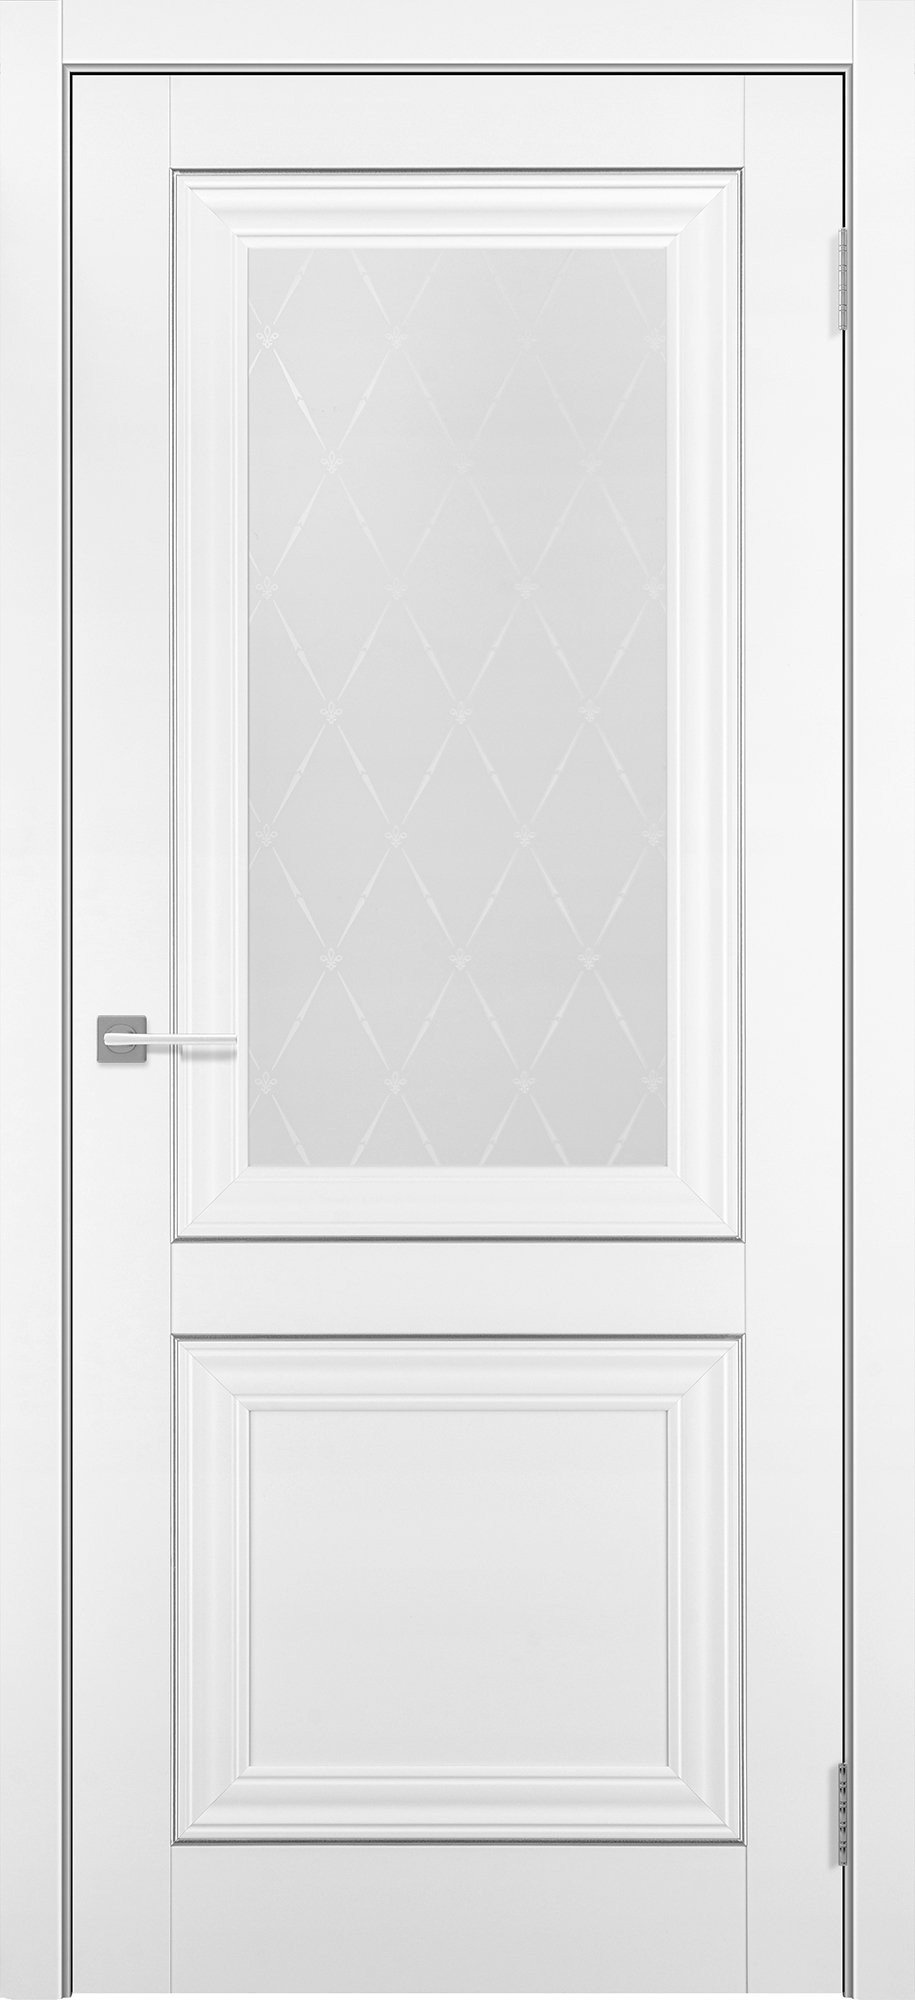 Межкомнатная дверь Гранд 8 со стеклом, покрытие Soft touch, белый бархат  купить в Севастополе, с бесплатной доставкой, установкой и гарантией